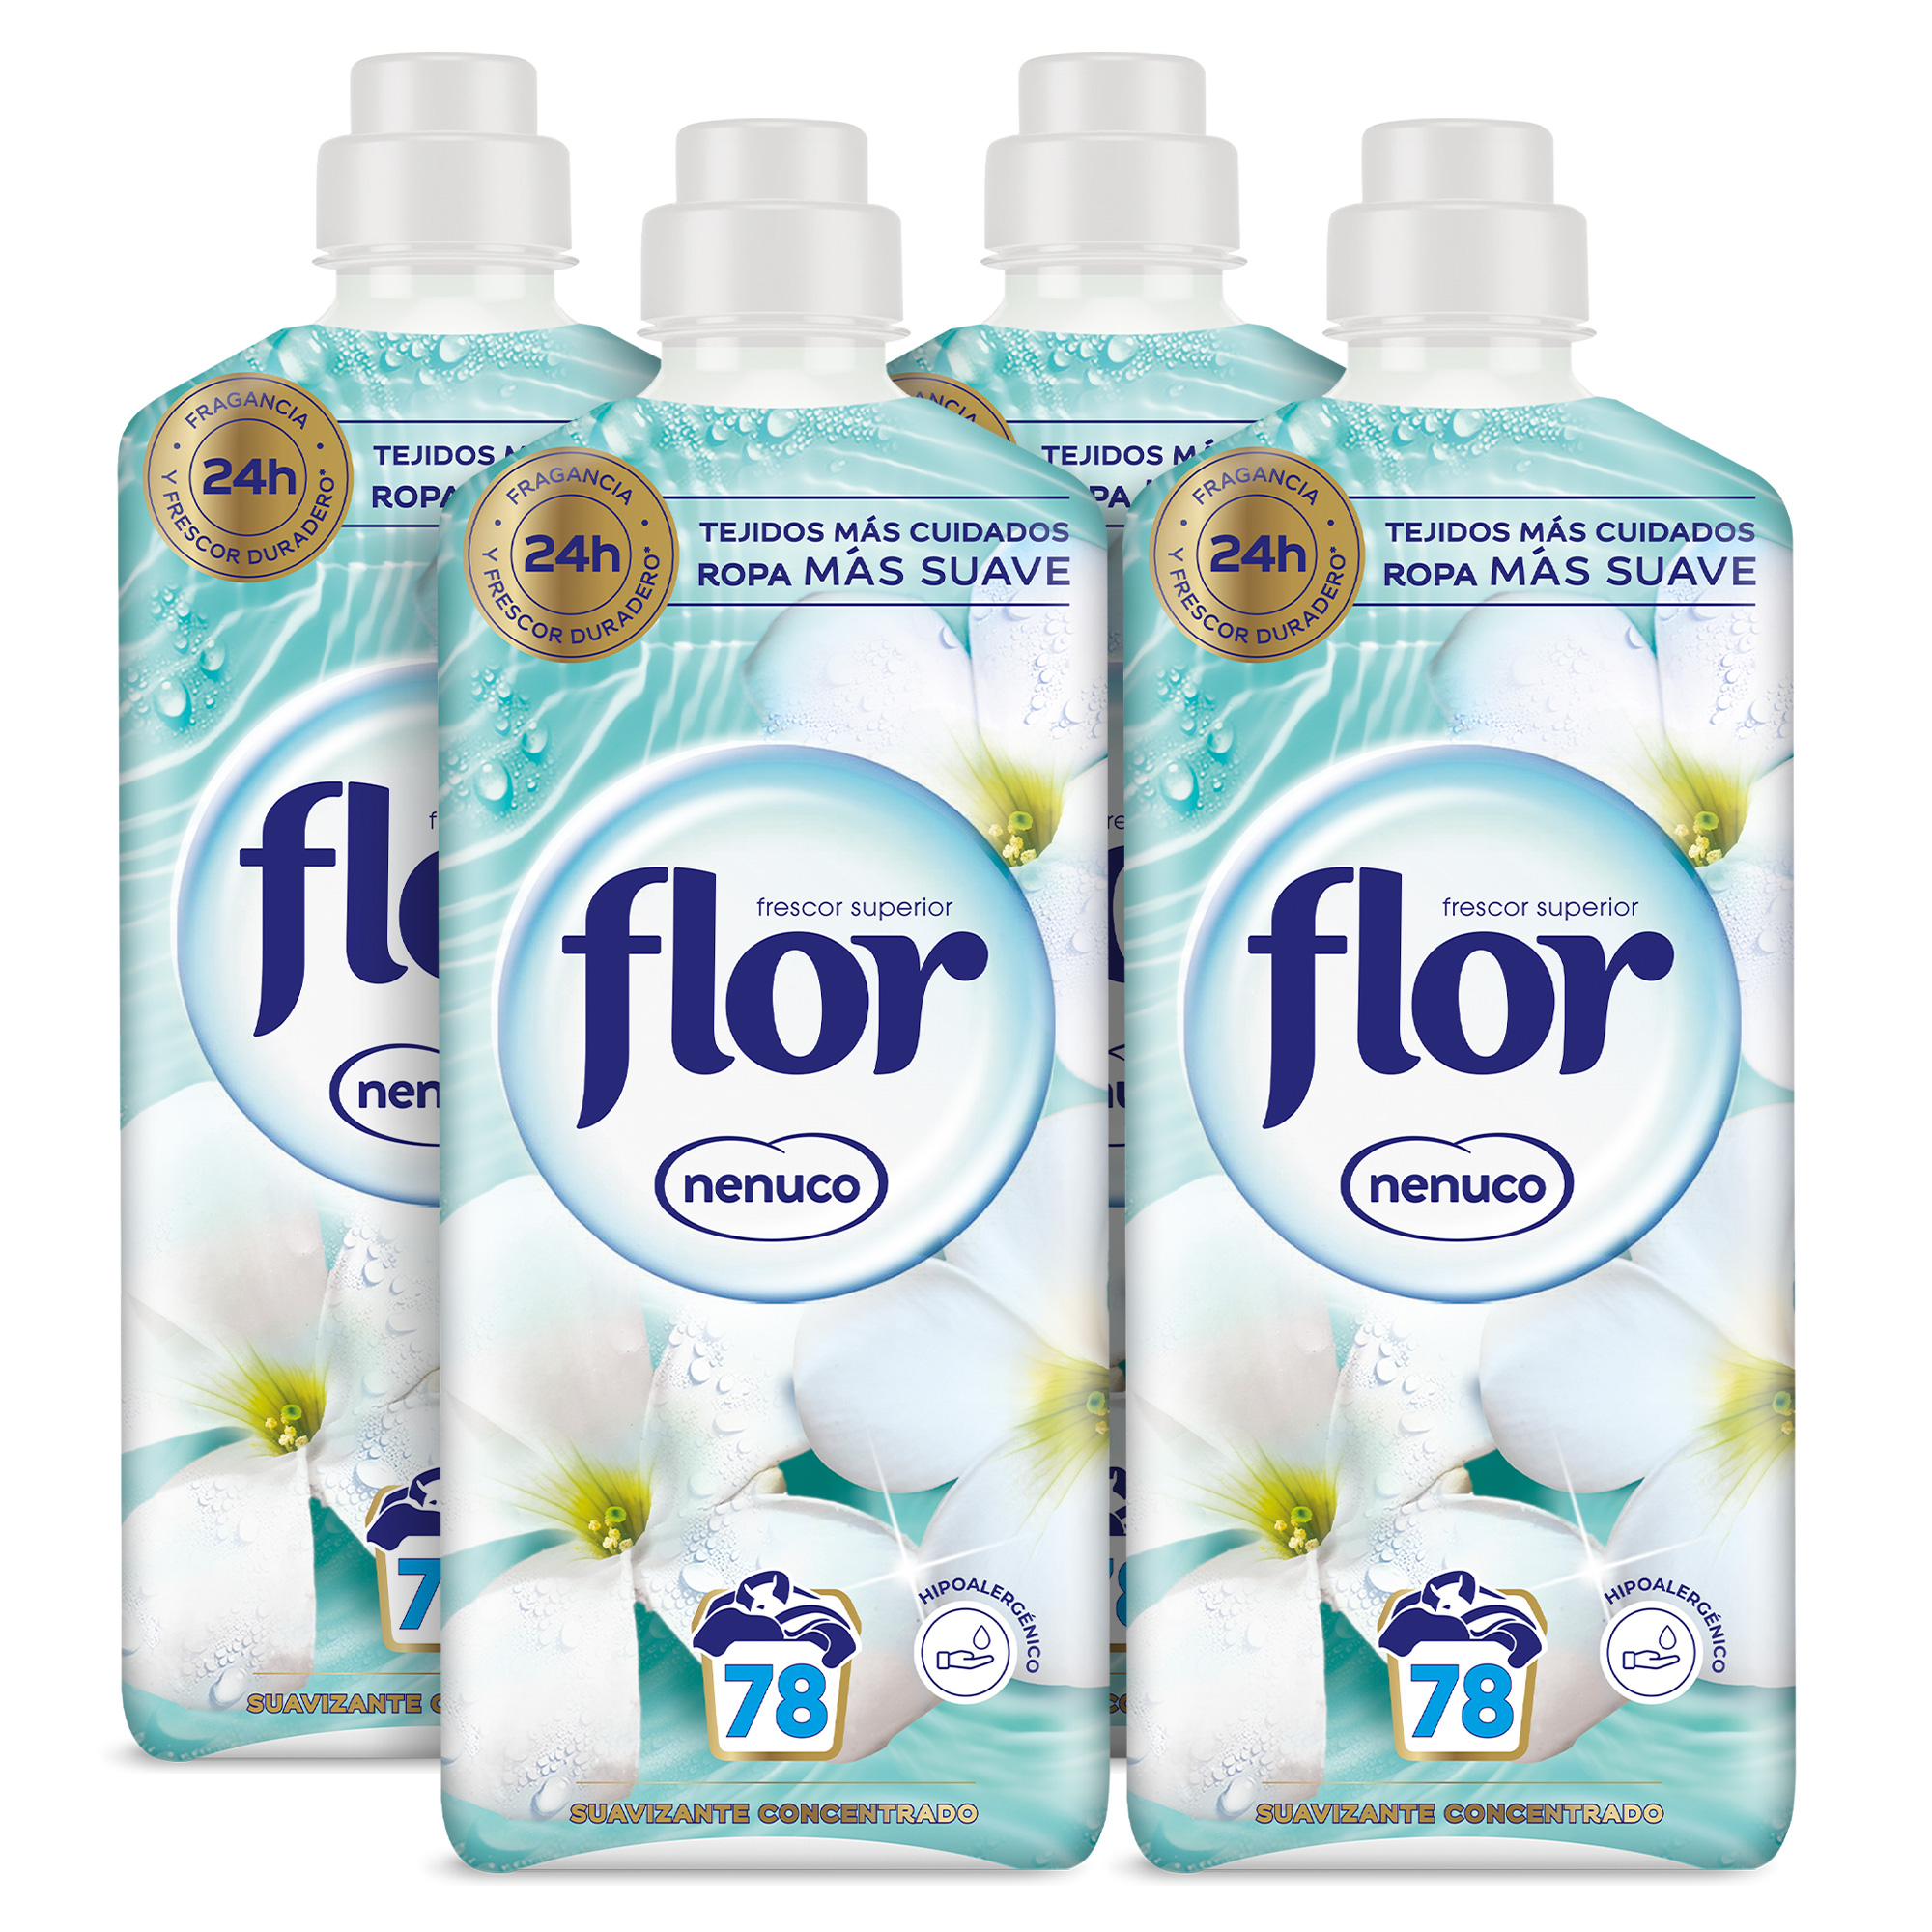 Flor - Flor Nenuco Suavizante Concentrado para la ropa 312 lavados (4 botellas de 78 lavados)